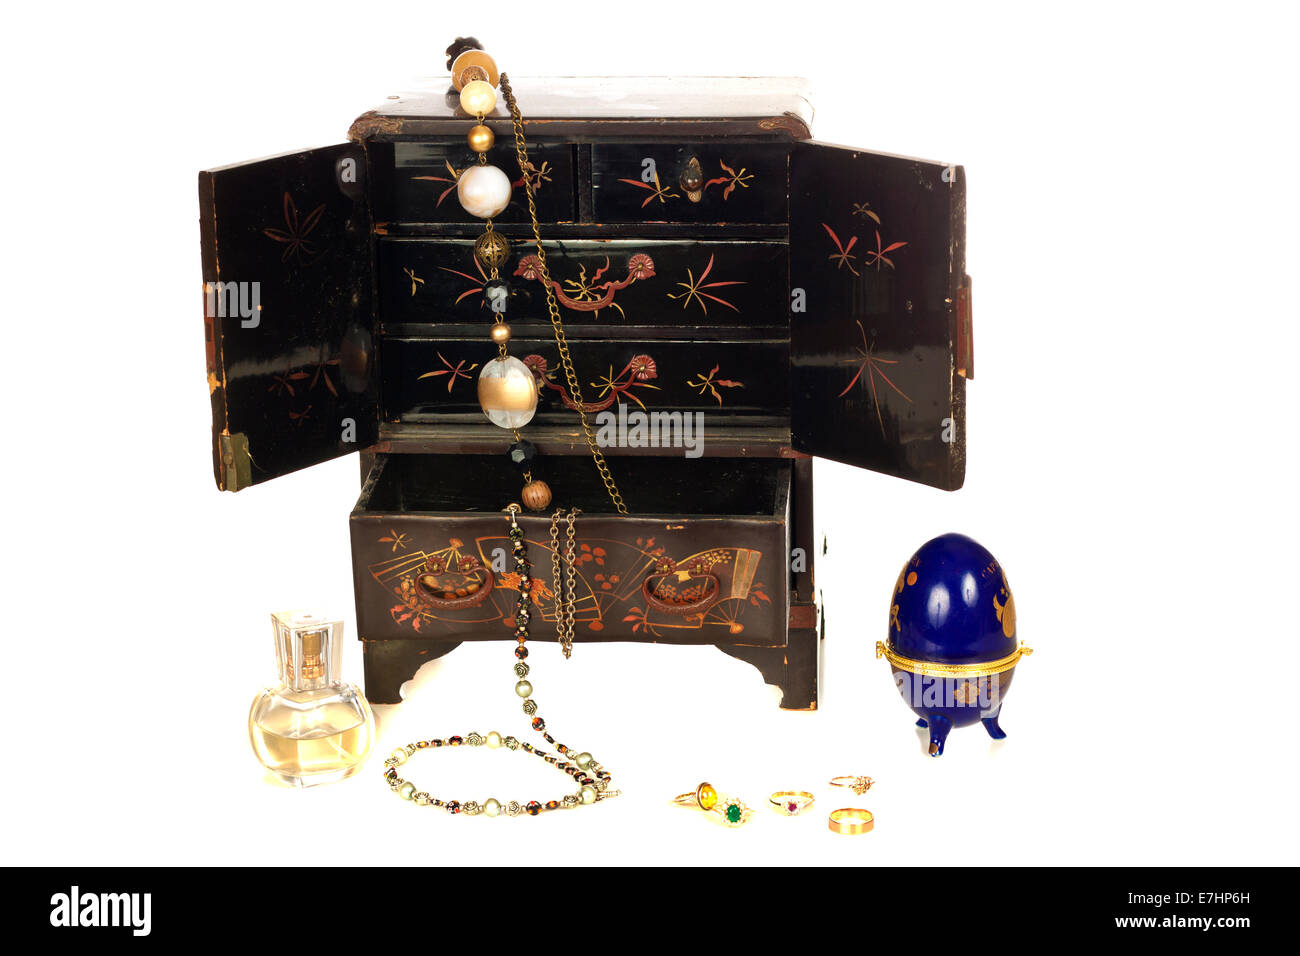 Vieille boîte de bijoux qui ressemble à une armoire, d'un parfum et certains joints toriques sur fond blanc Banque D'Images